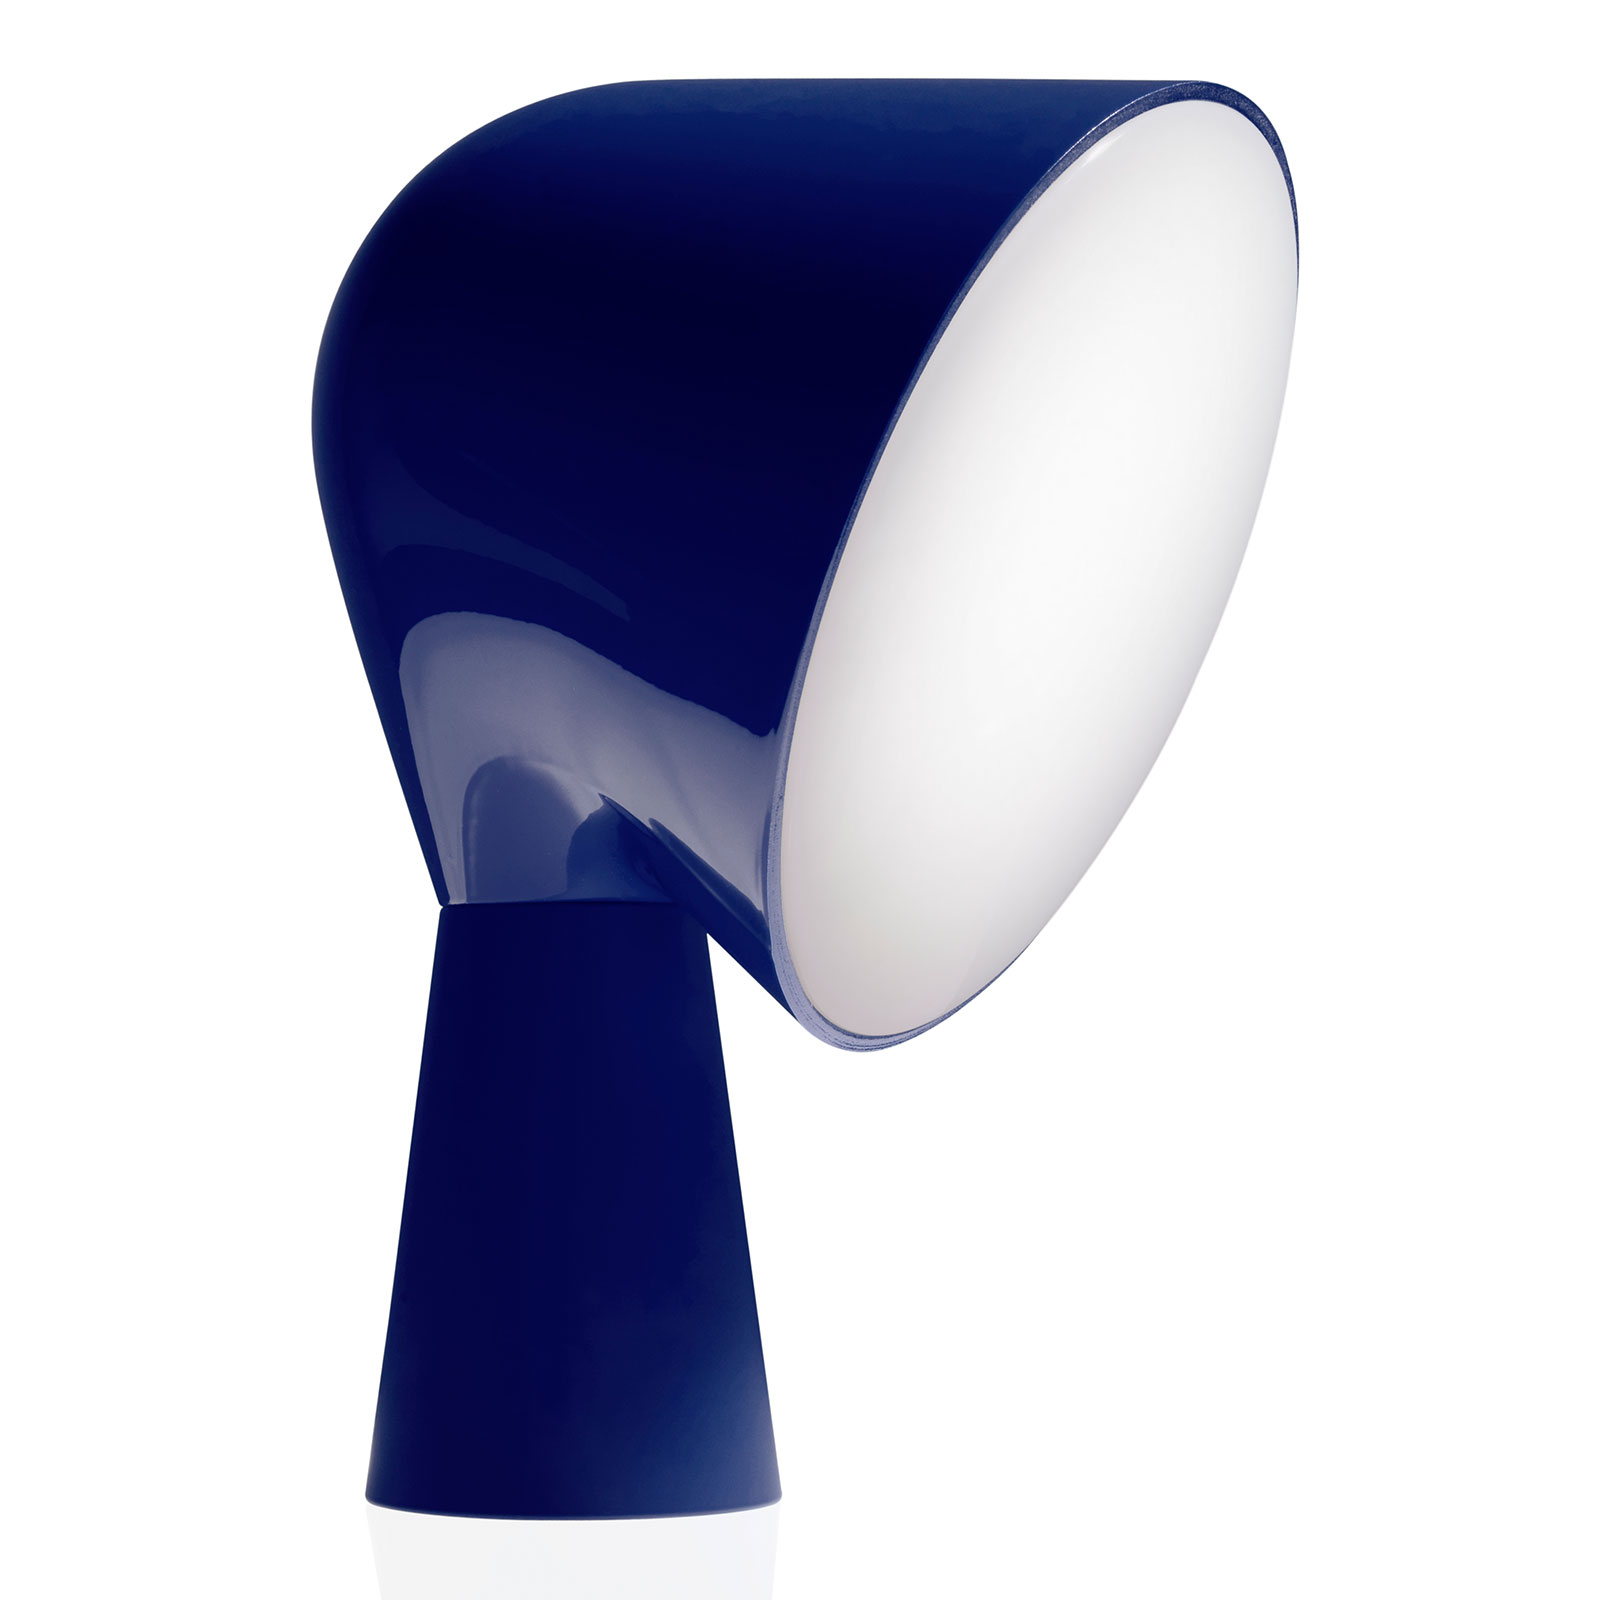 Foscarini Binic formatervezett asztali lámpa, kék